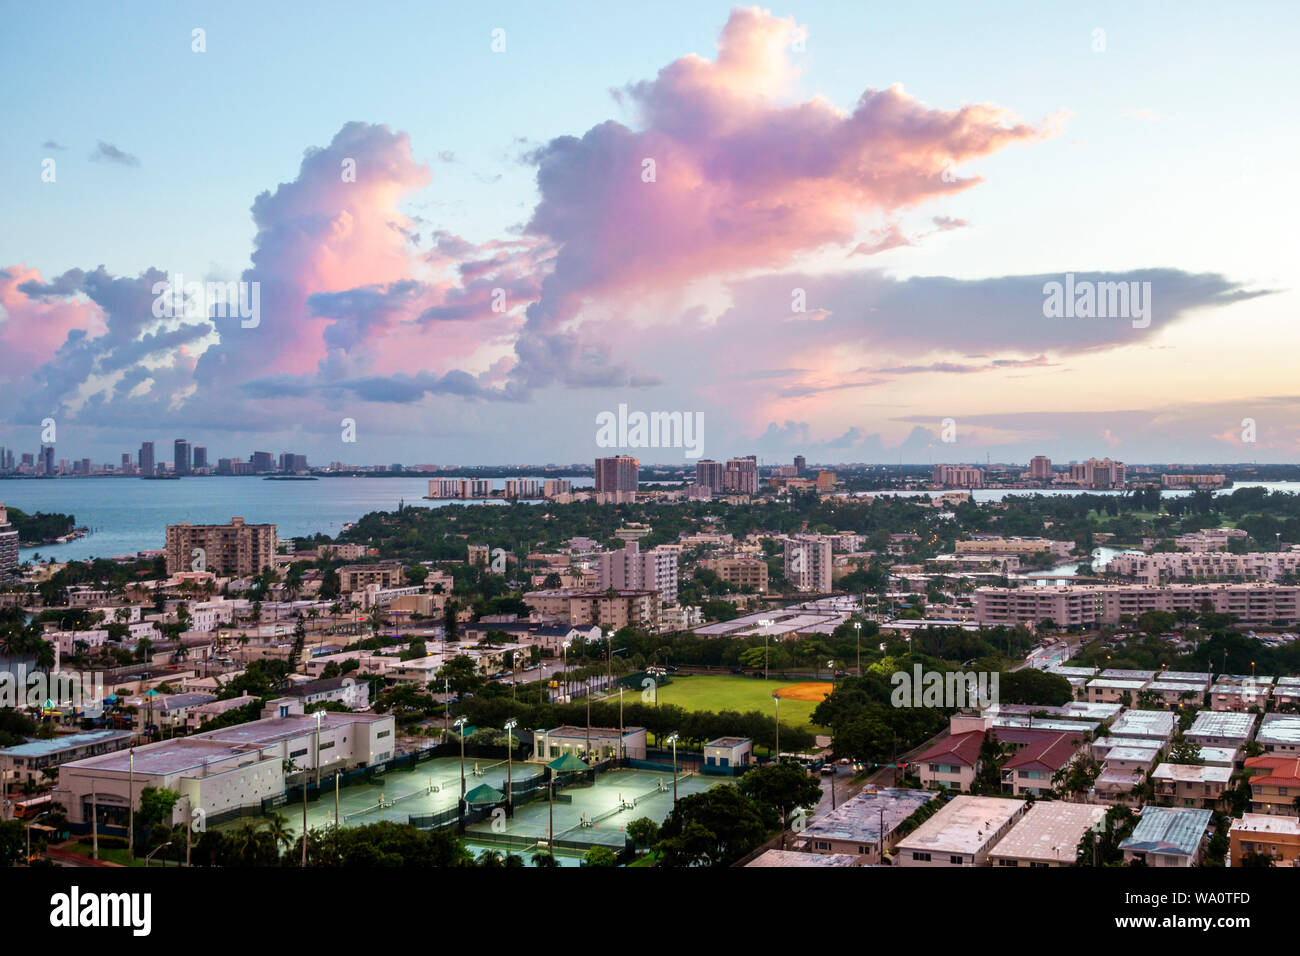 Miami Beach Florida, North Beach, Biscayne Bay, nubes clima cielo tormenta nubes, lluvia, puesta de sol, horizonte de la ciudad, FL190731021 Foto de stock